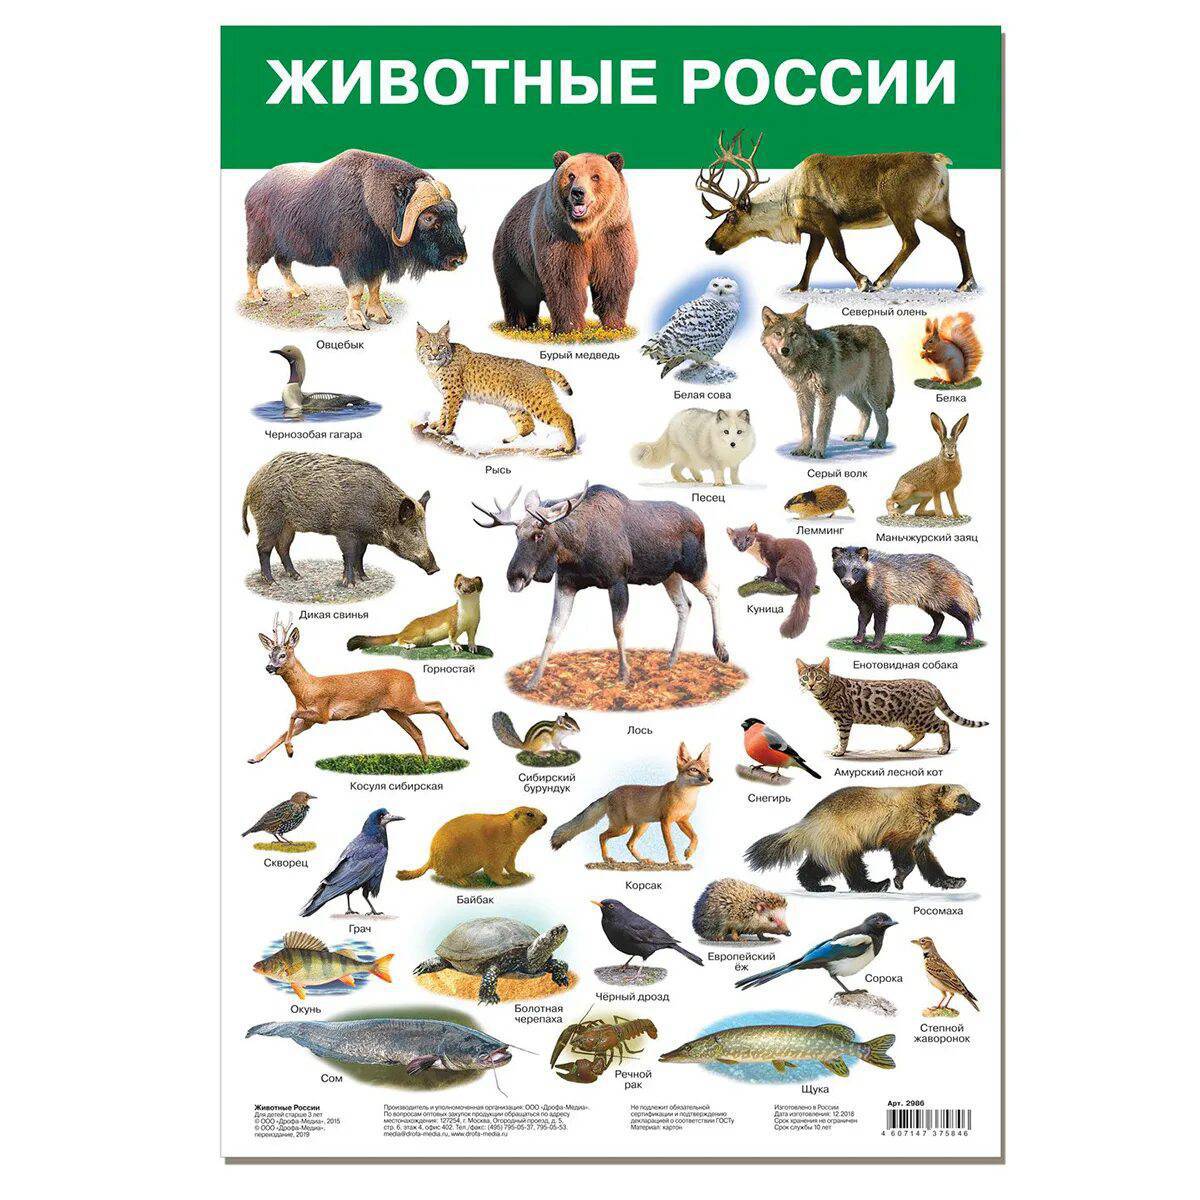 Дикие животные россии #36